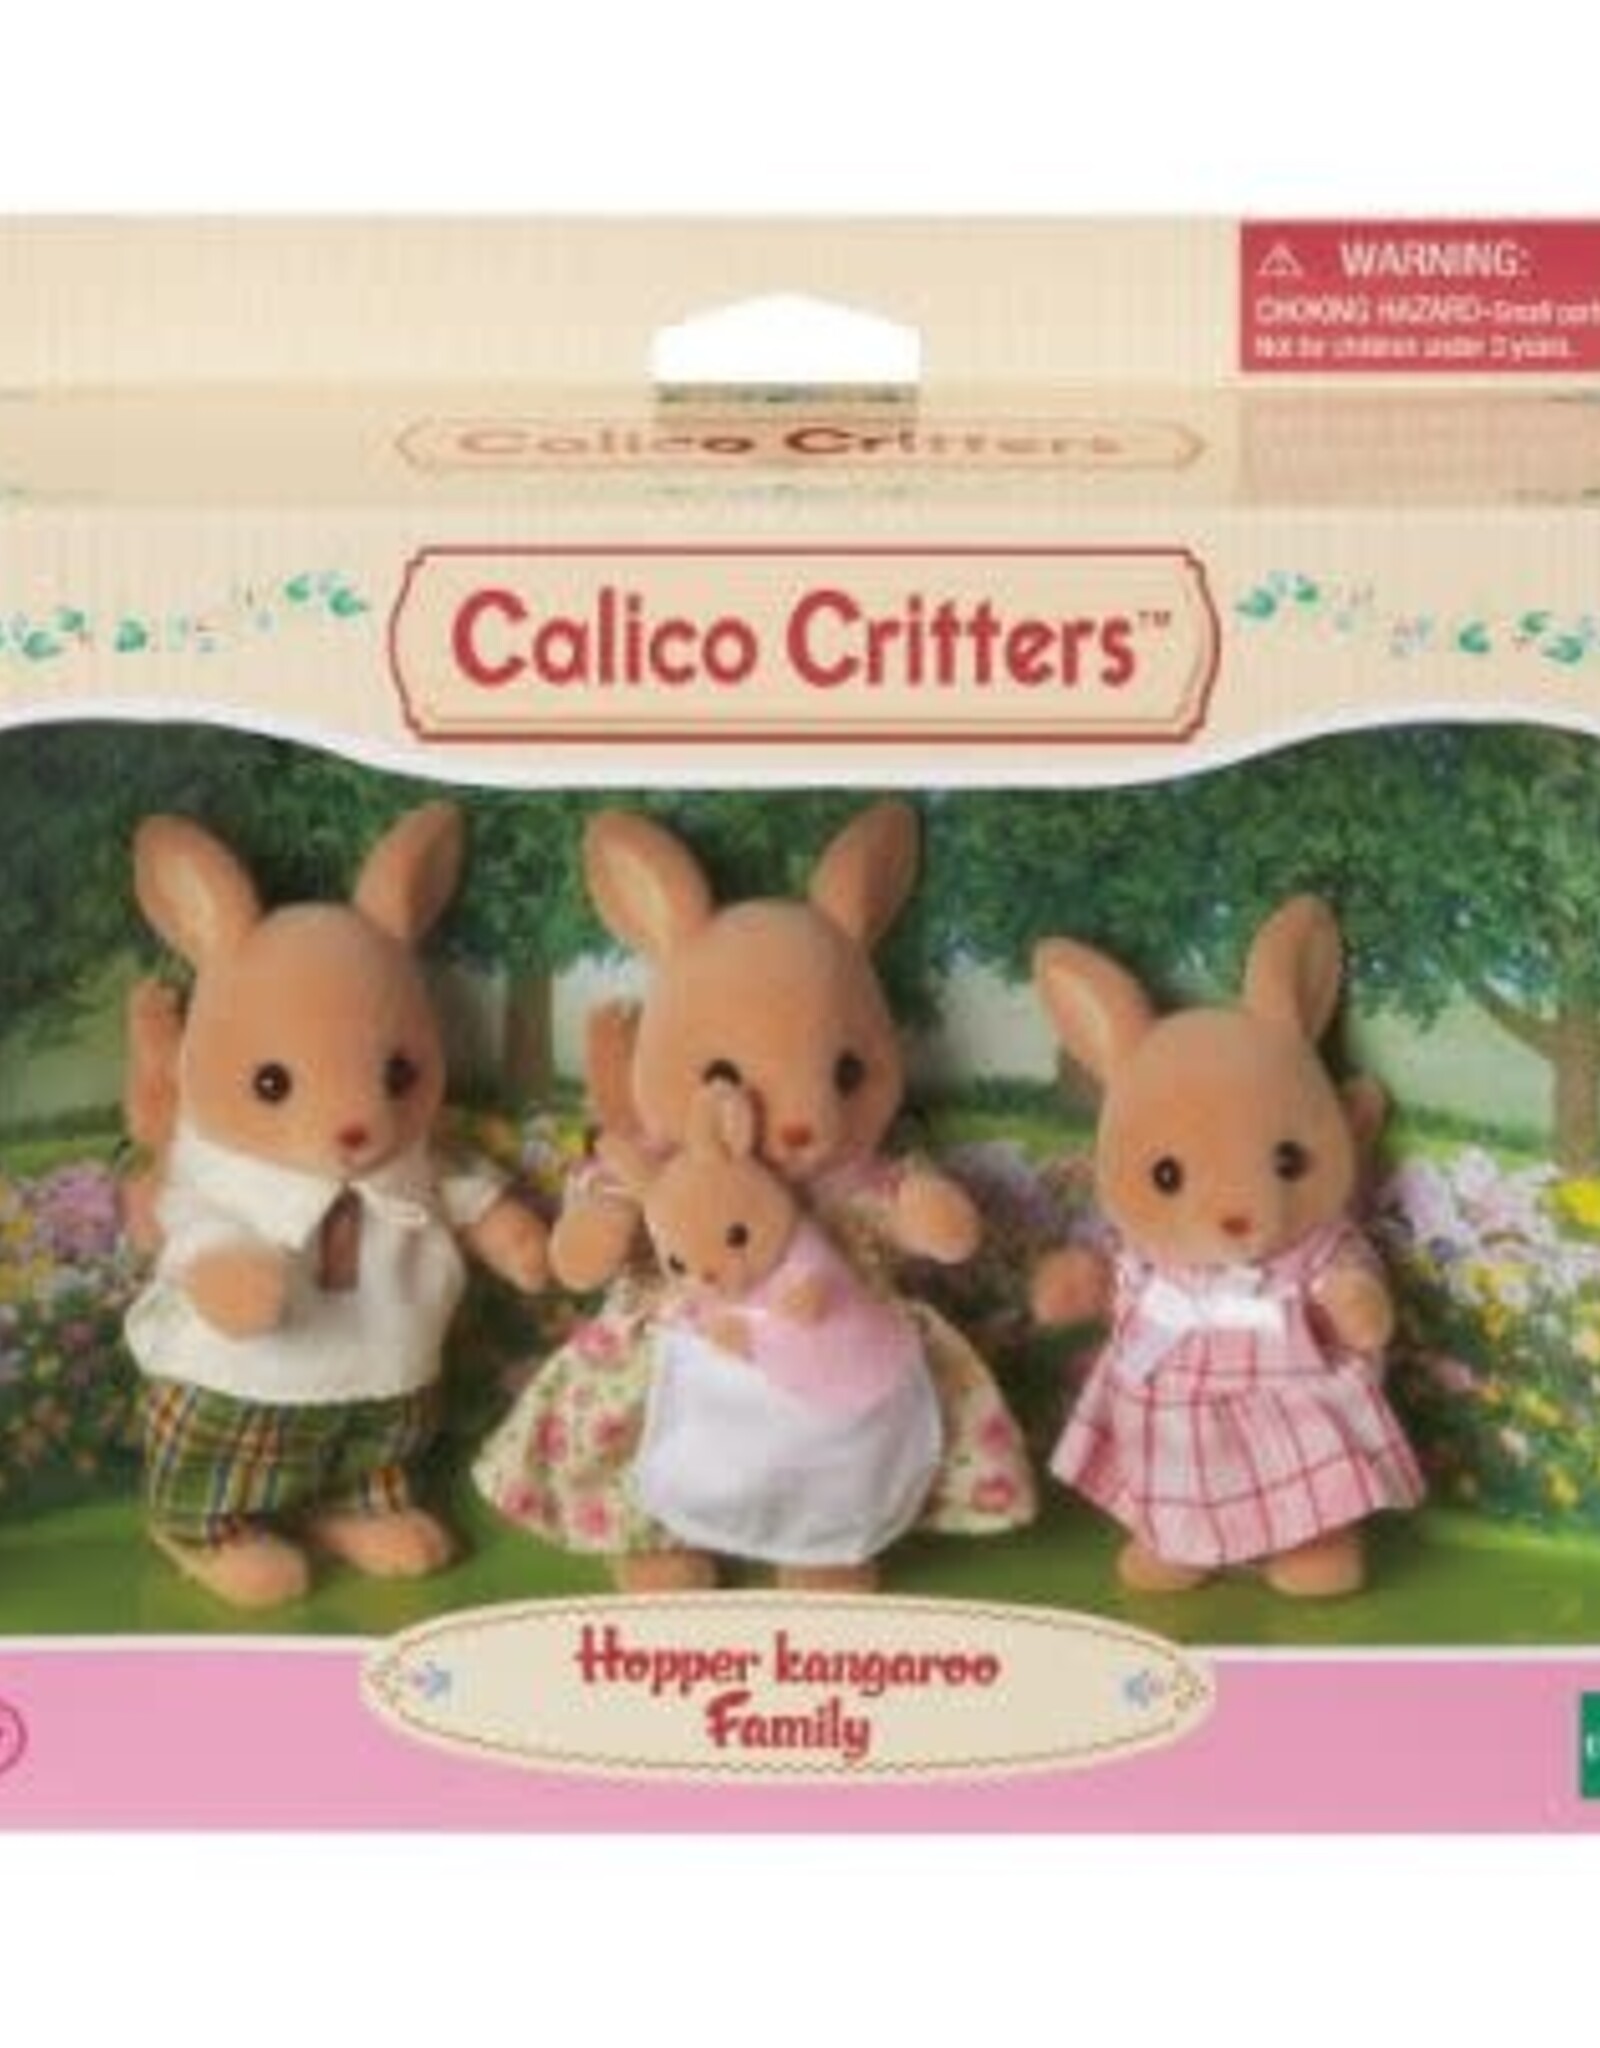 Calico Critters Kangaroo Family